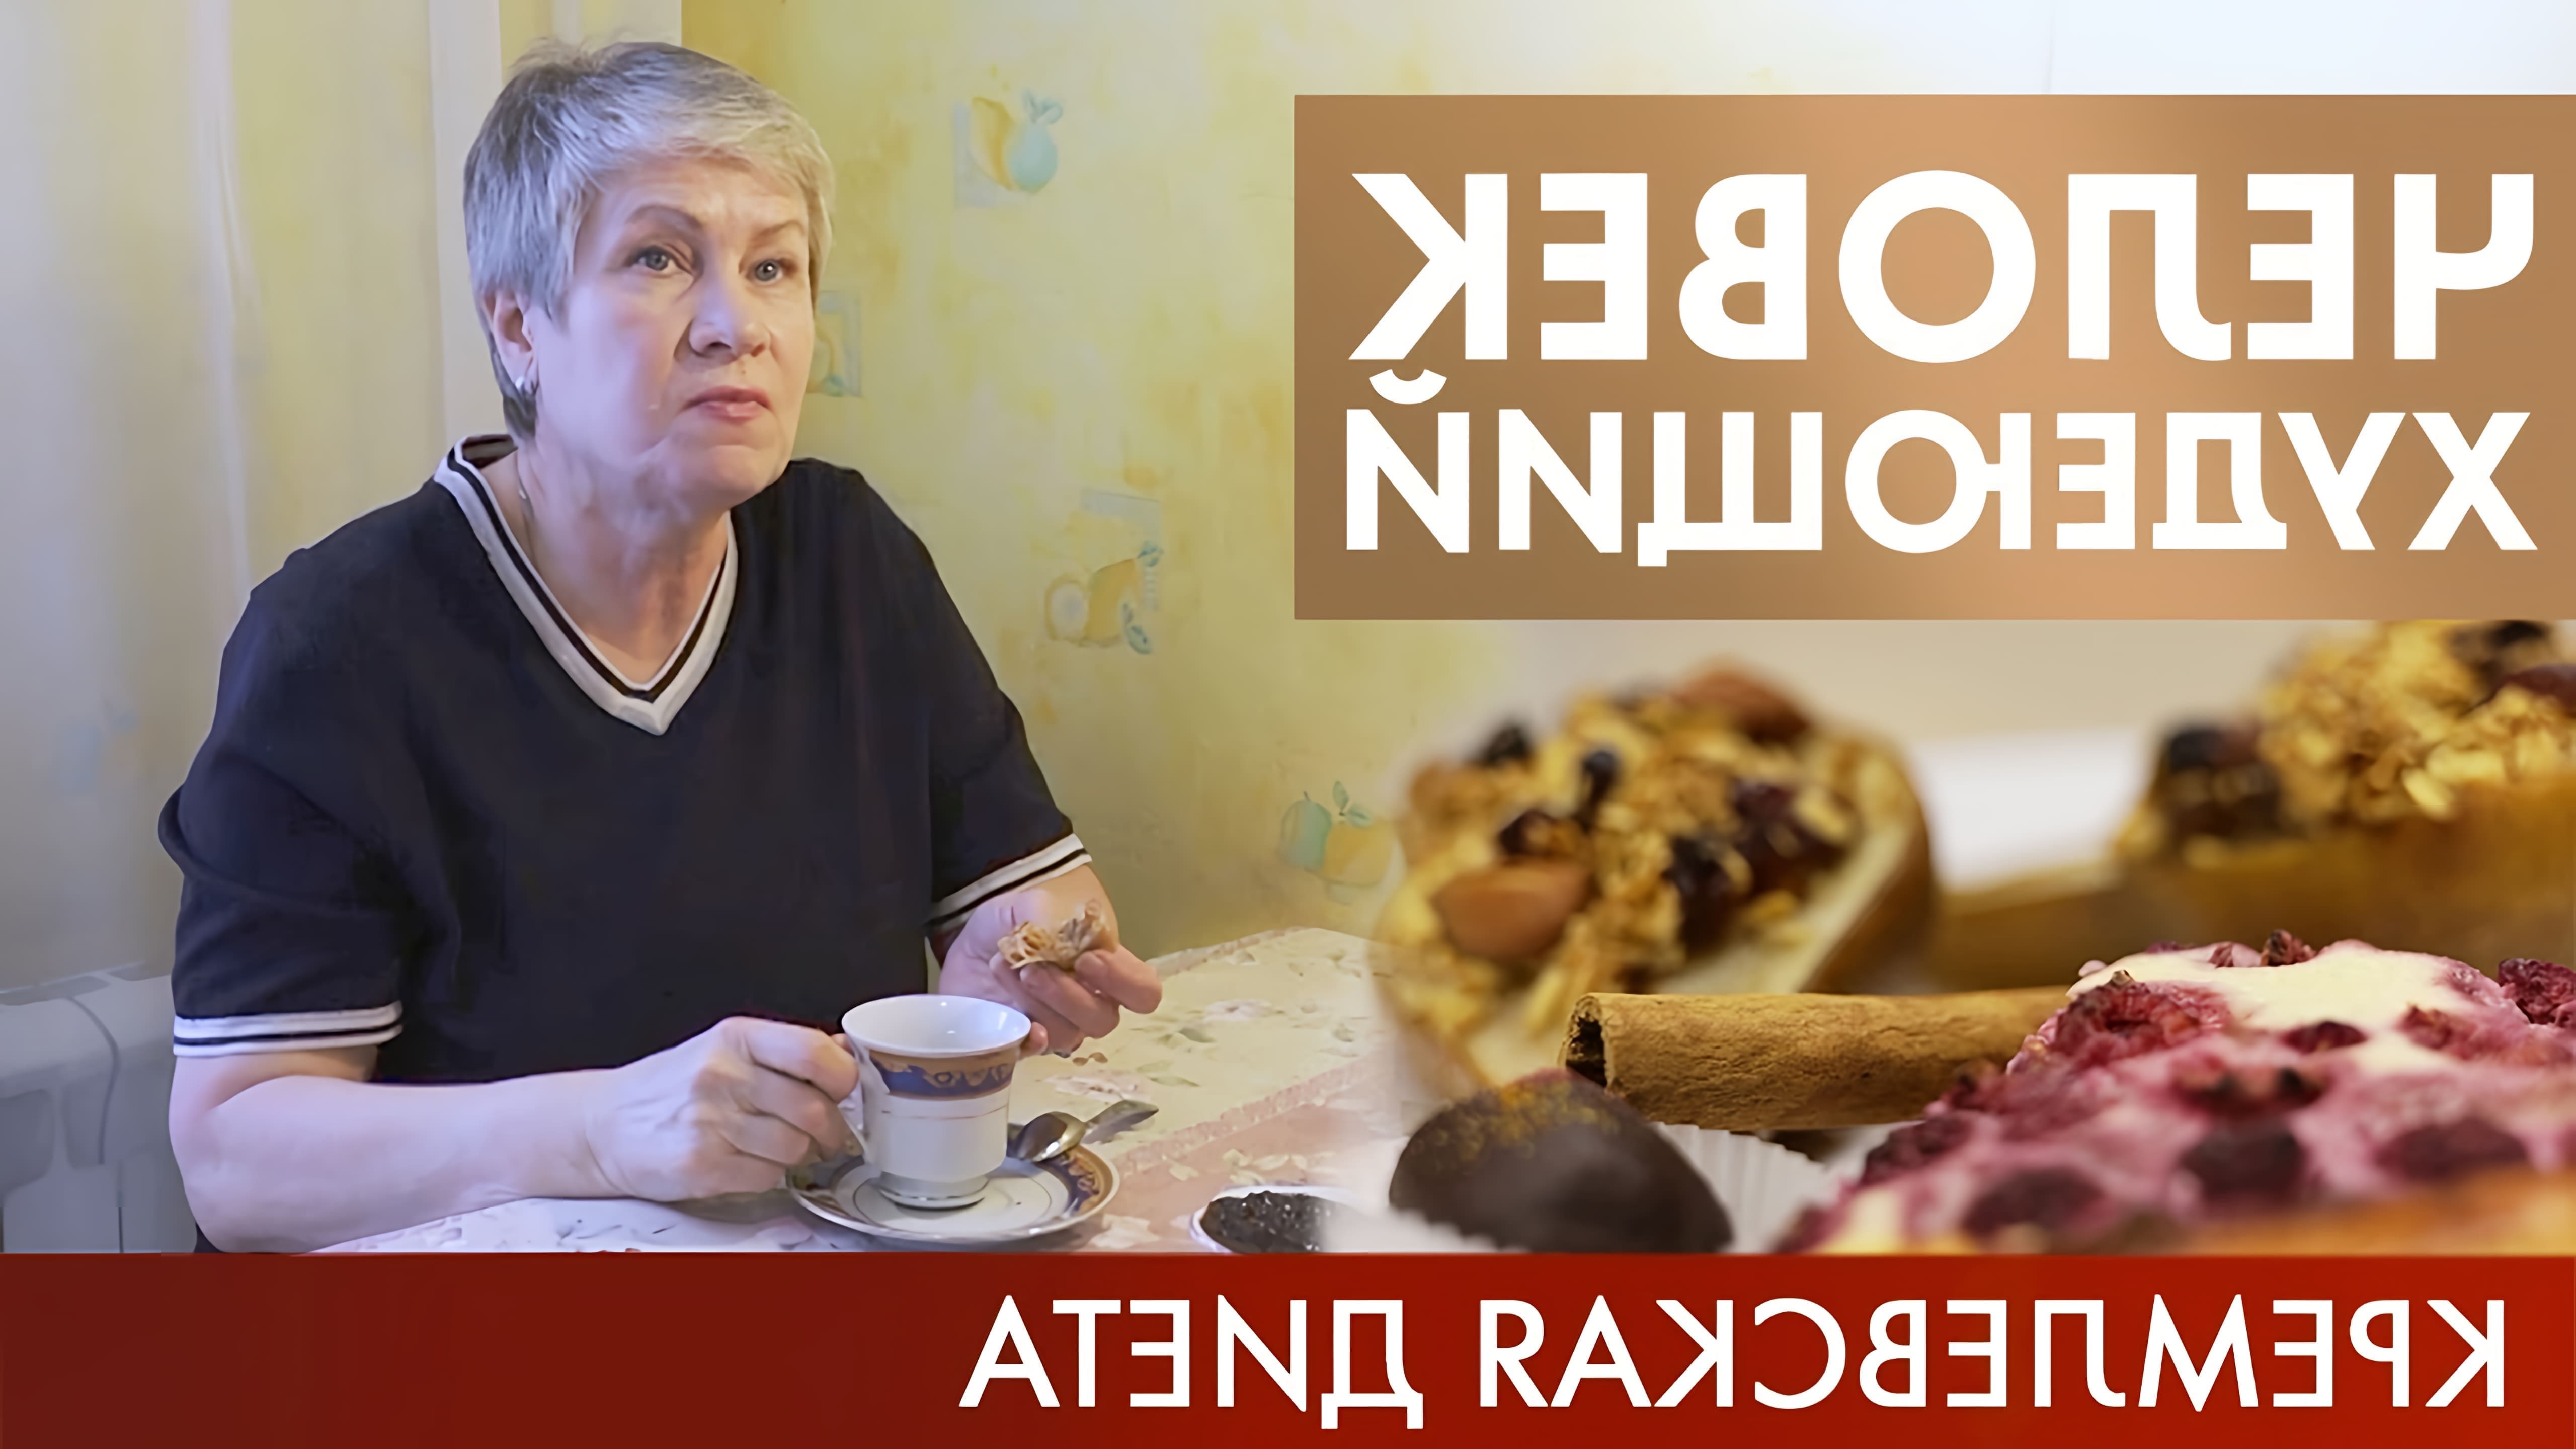 В этом видео рассказывается о кремлевской диете, которая ограничивает употребление углеводов и увеличивает количество белка в рационе